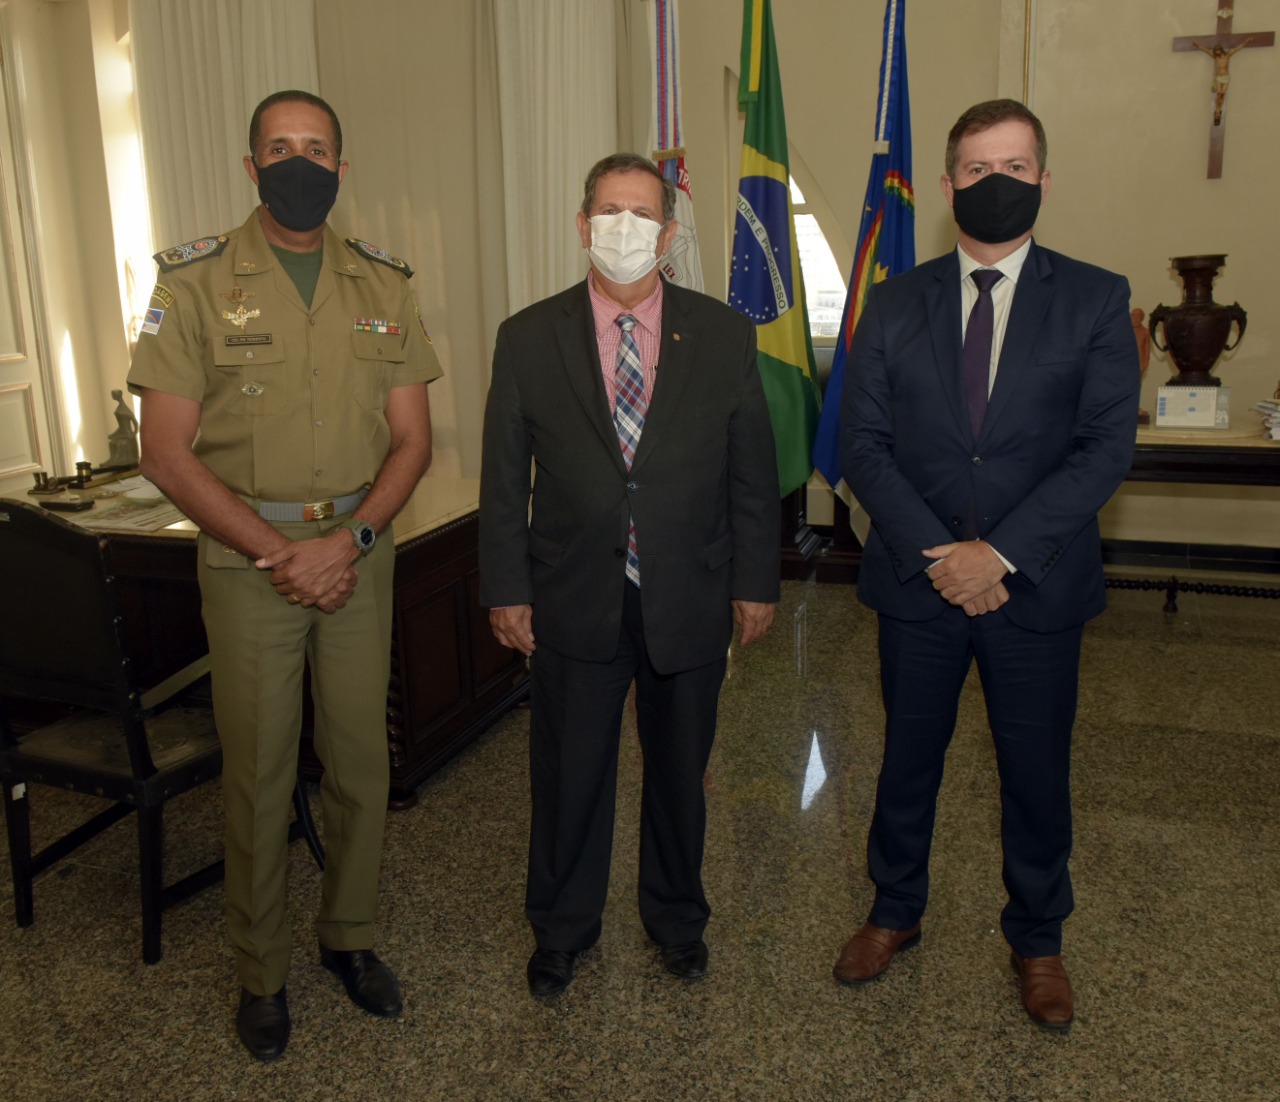 Três autoridades em um gabinete posam em pé para foto. Um deles está com fardamento militar, e os outros dois estão com trajes formais.